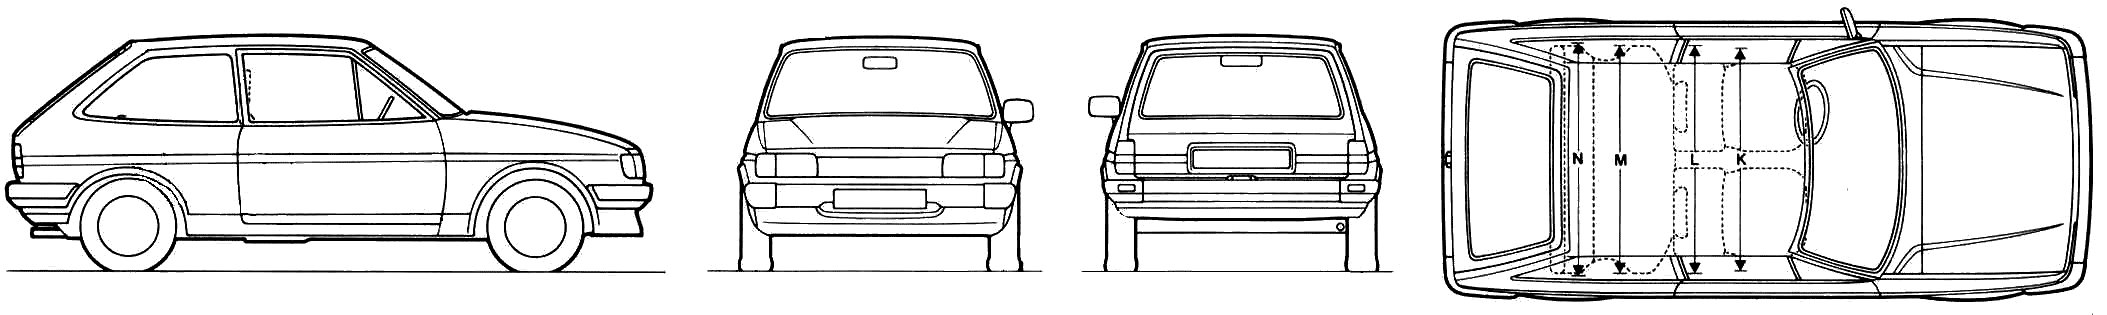 1983 Ford Fiesta Mk II Hatchback blueprints free - Outlines